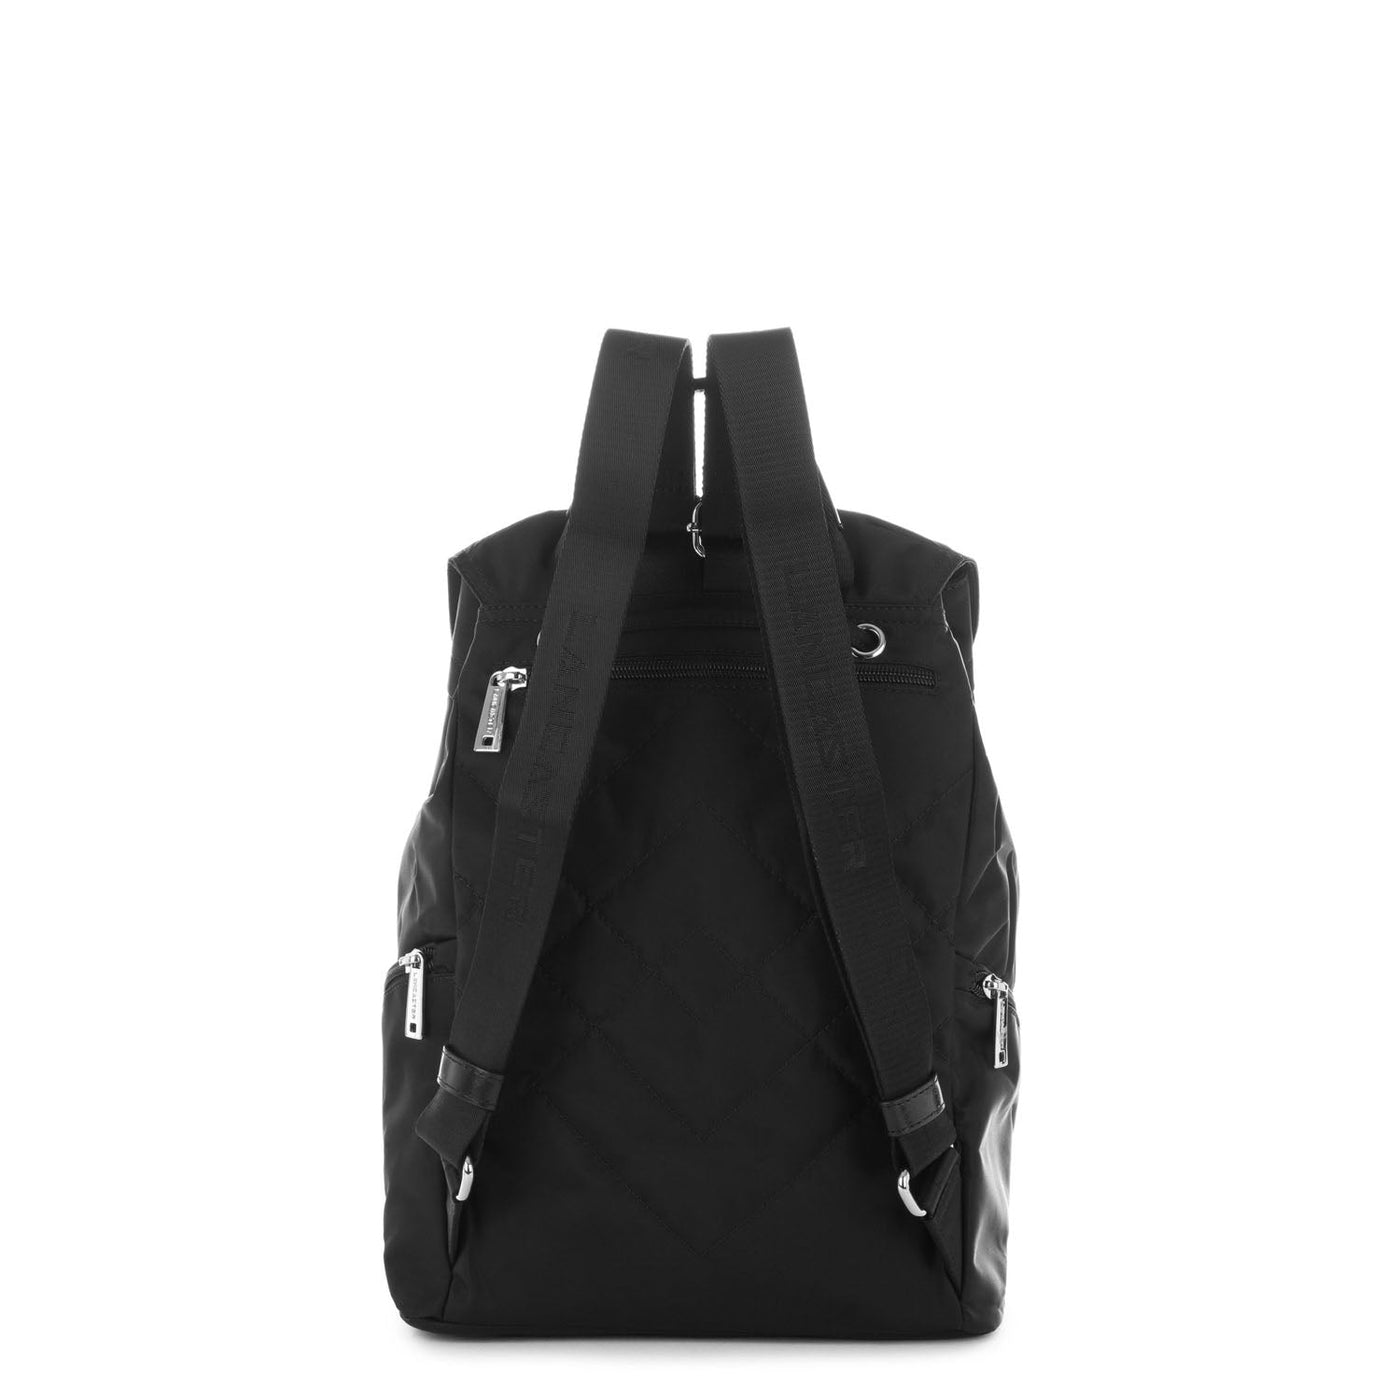 backpack - basic pompon #couleur_noir